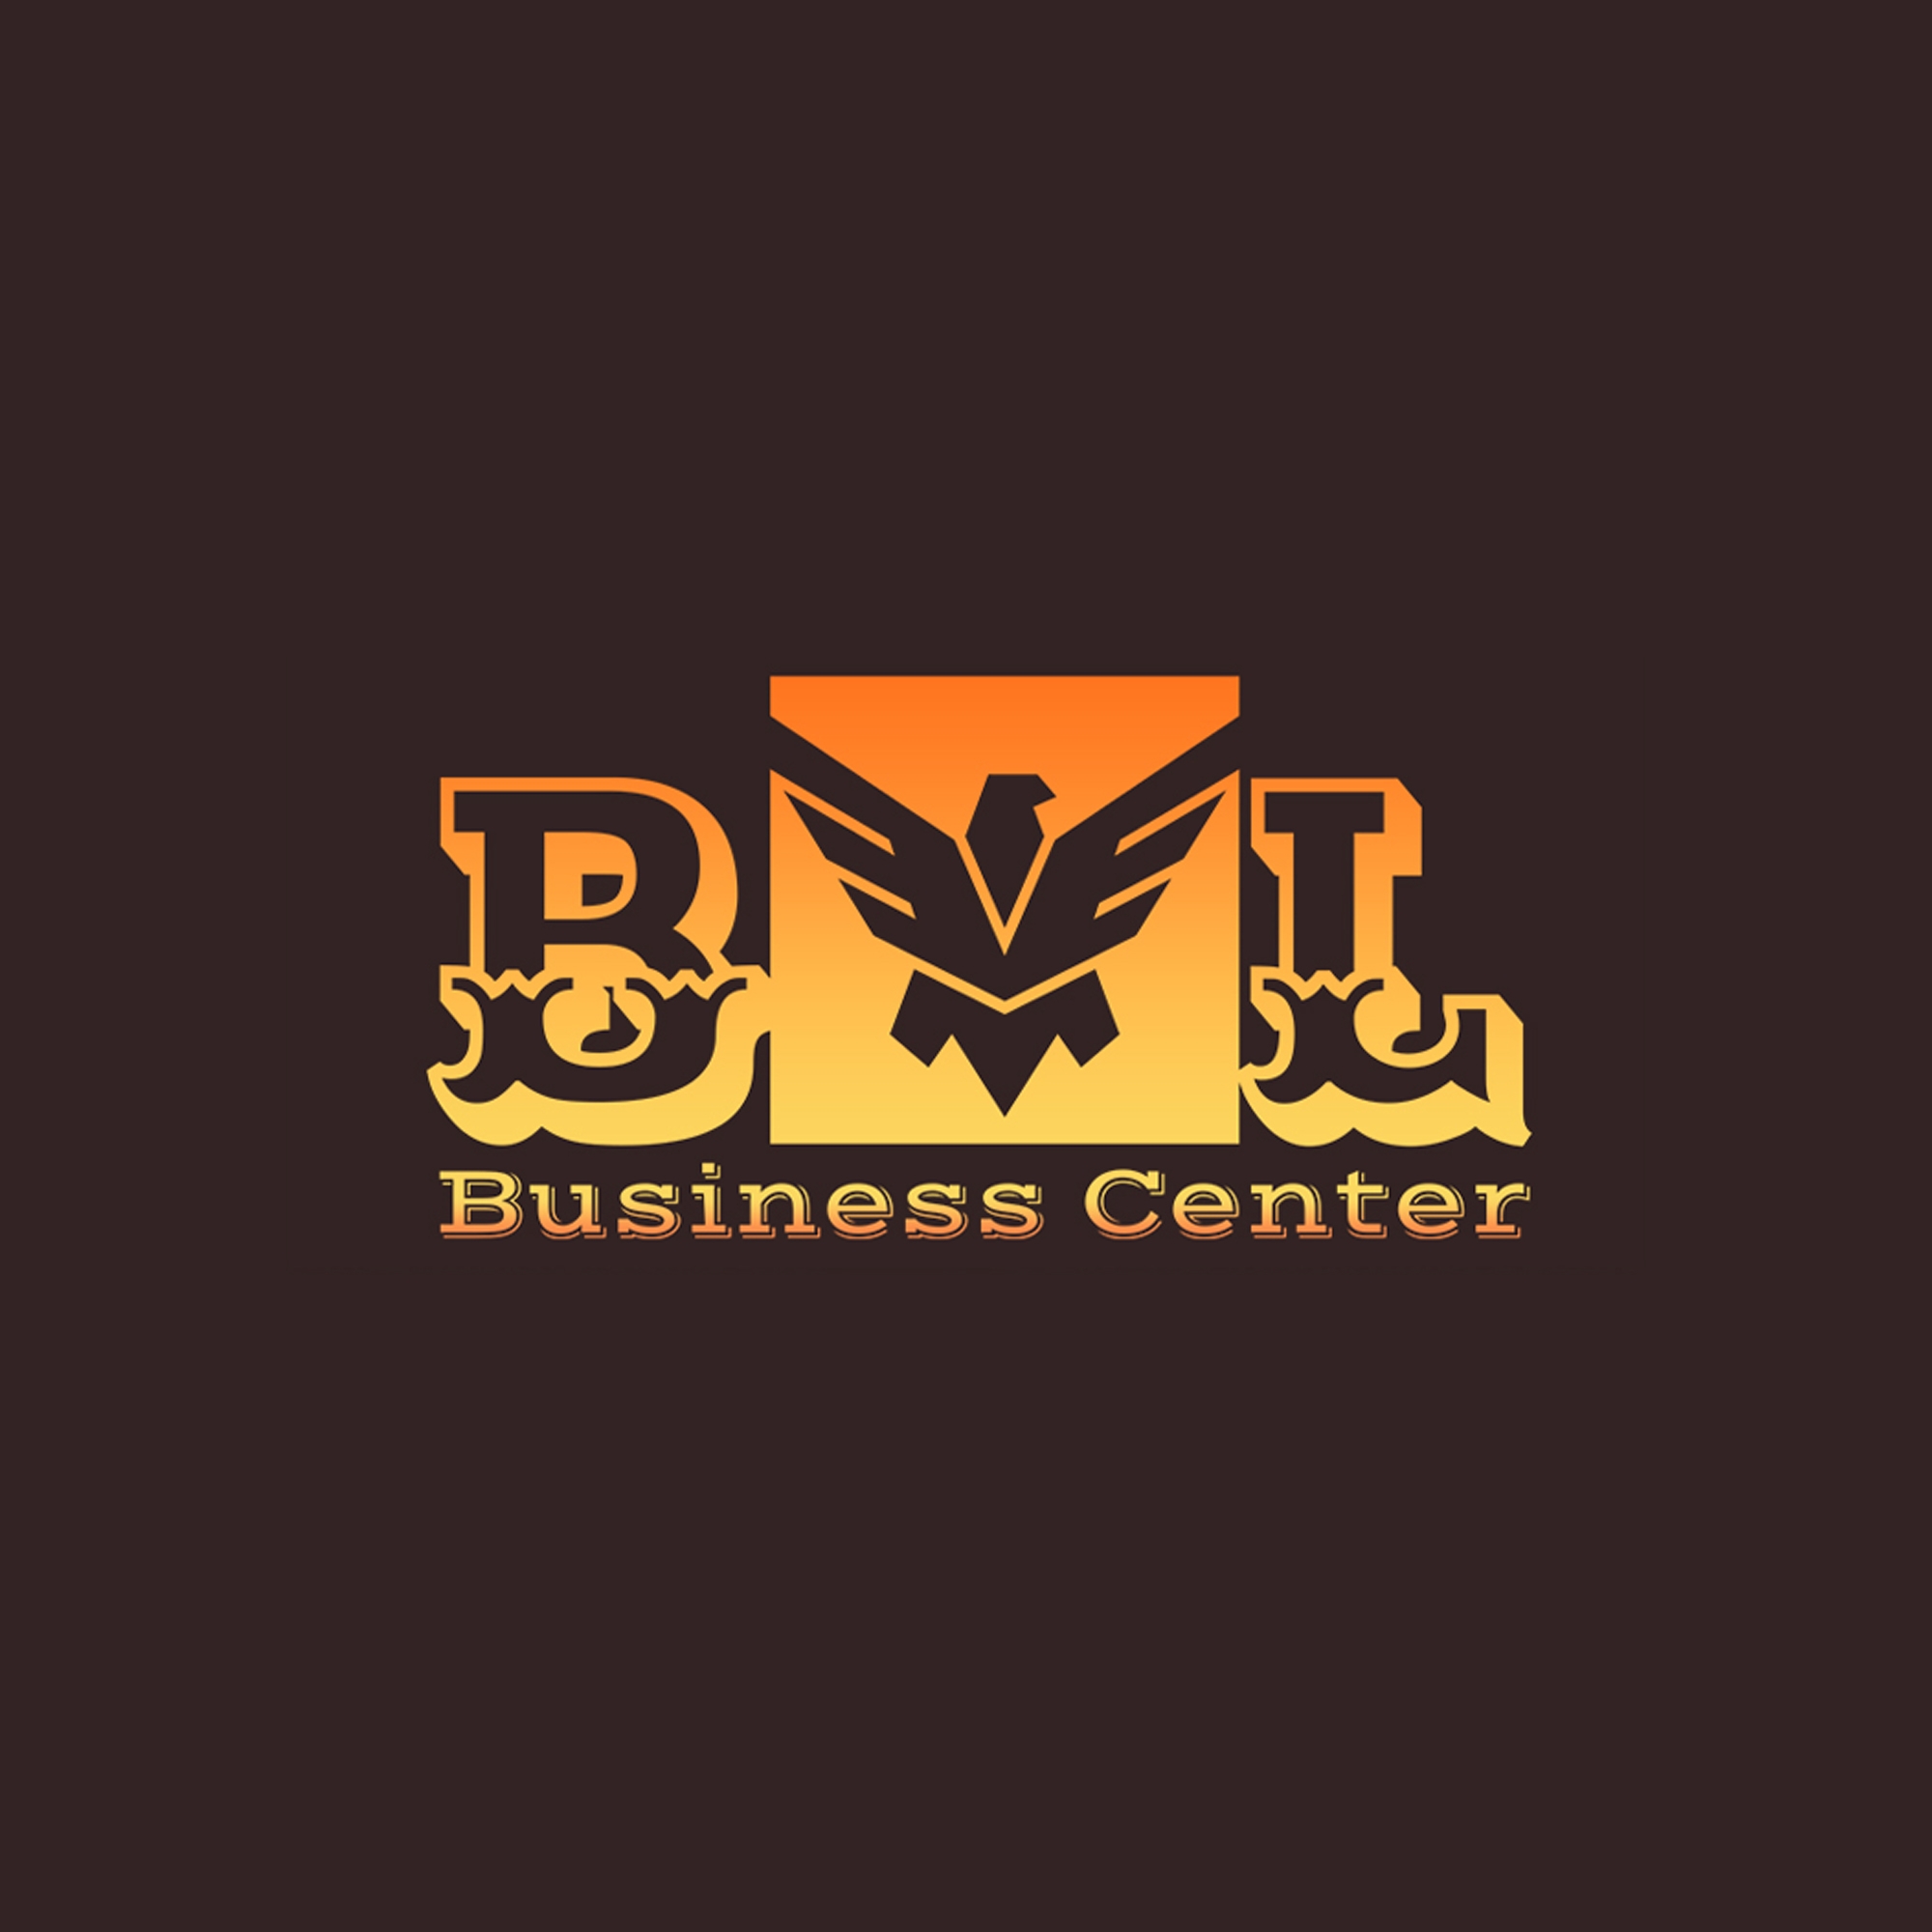 BML Business Center LLC